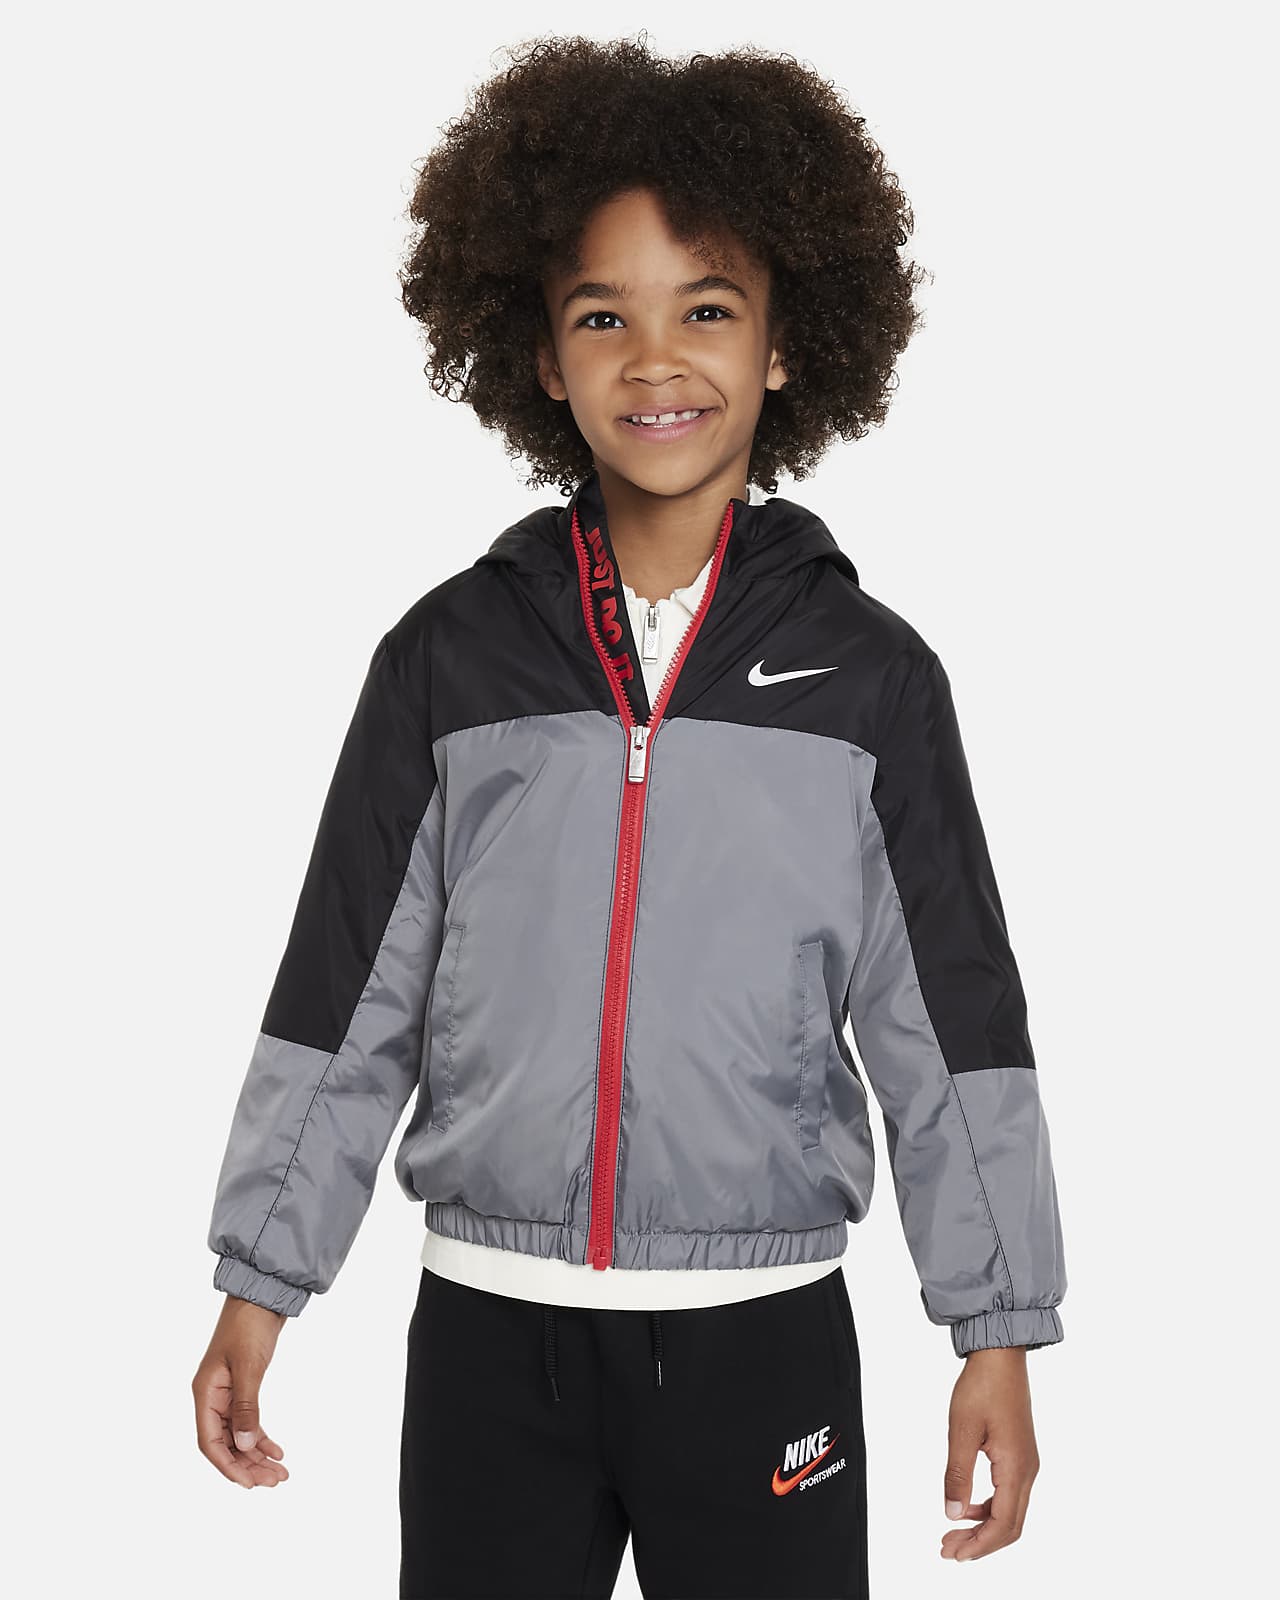 Fleeceforet, vævet Nike-jakke til mindre børn